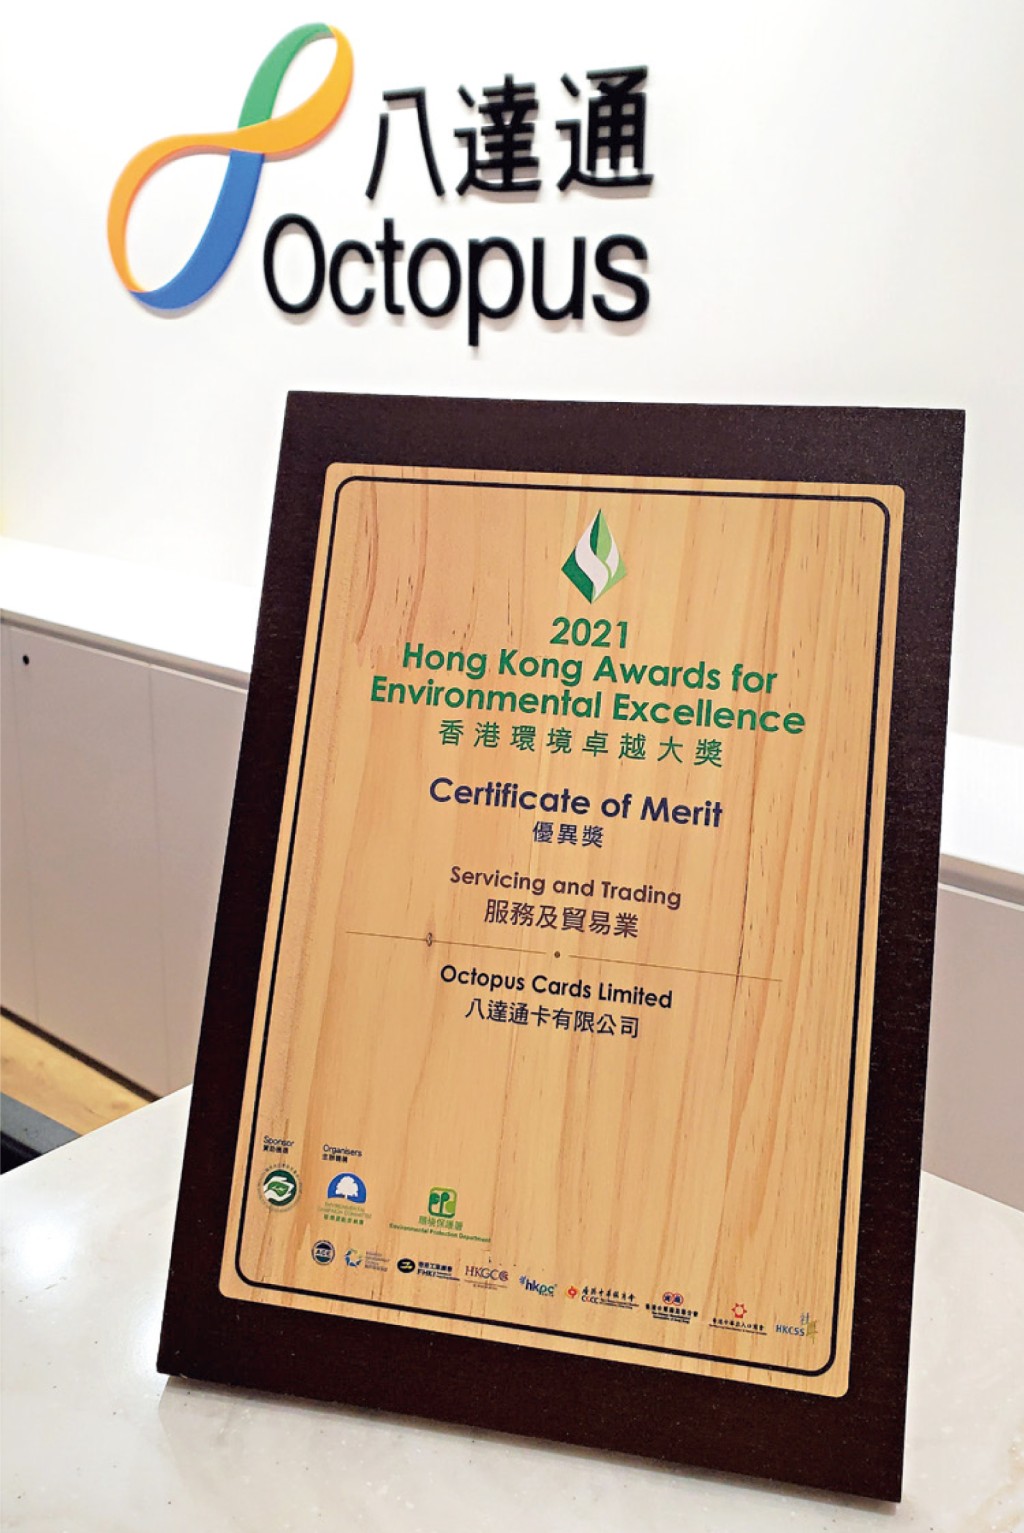 八達通在推動可持續發展方面的努力備受肯定，獲「香港環境卓越大獎」嘉許。